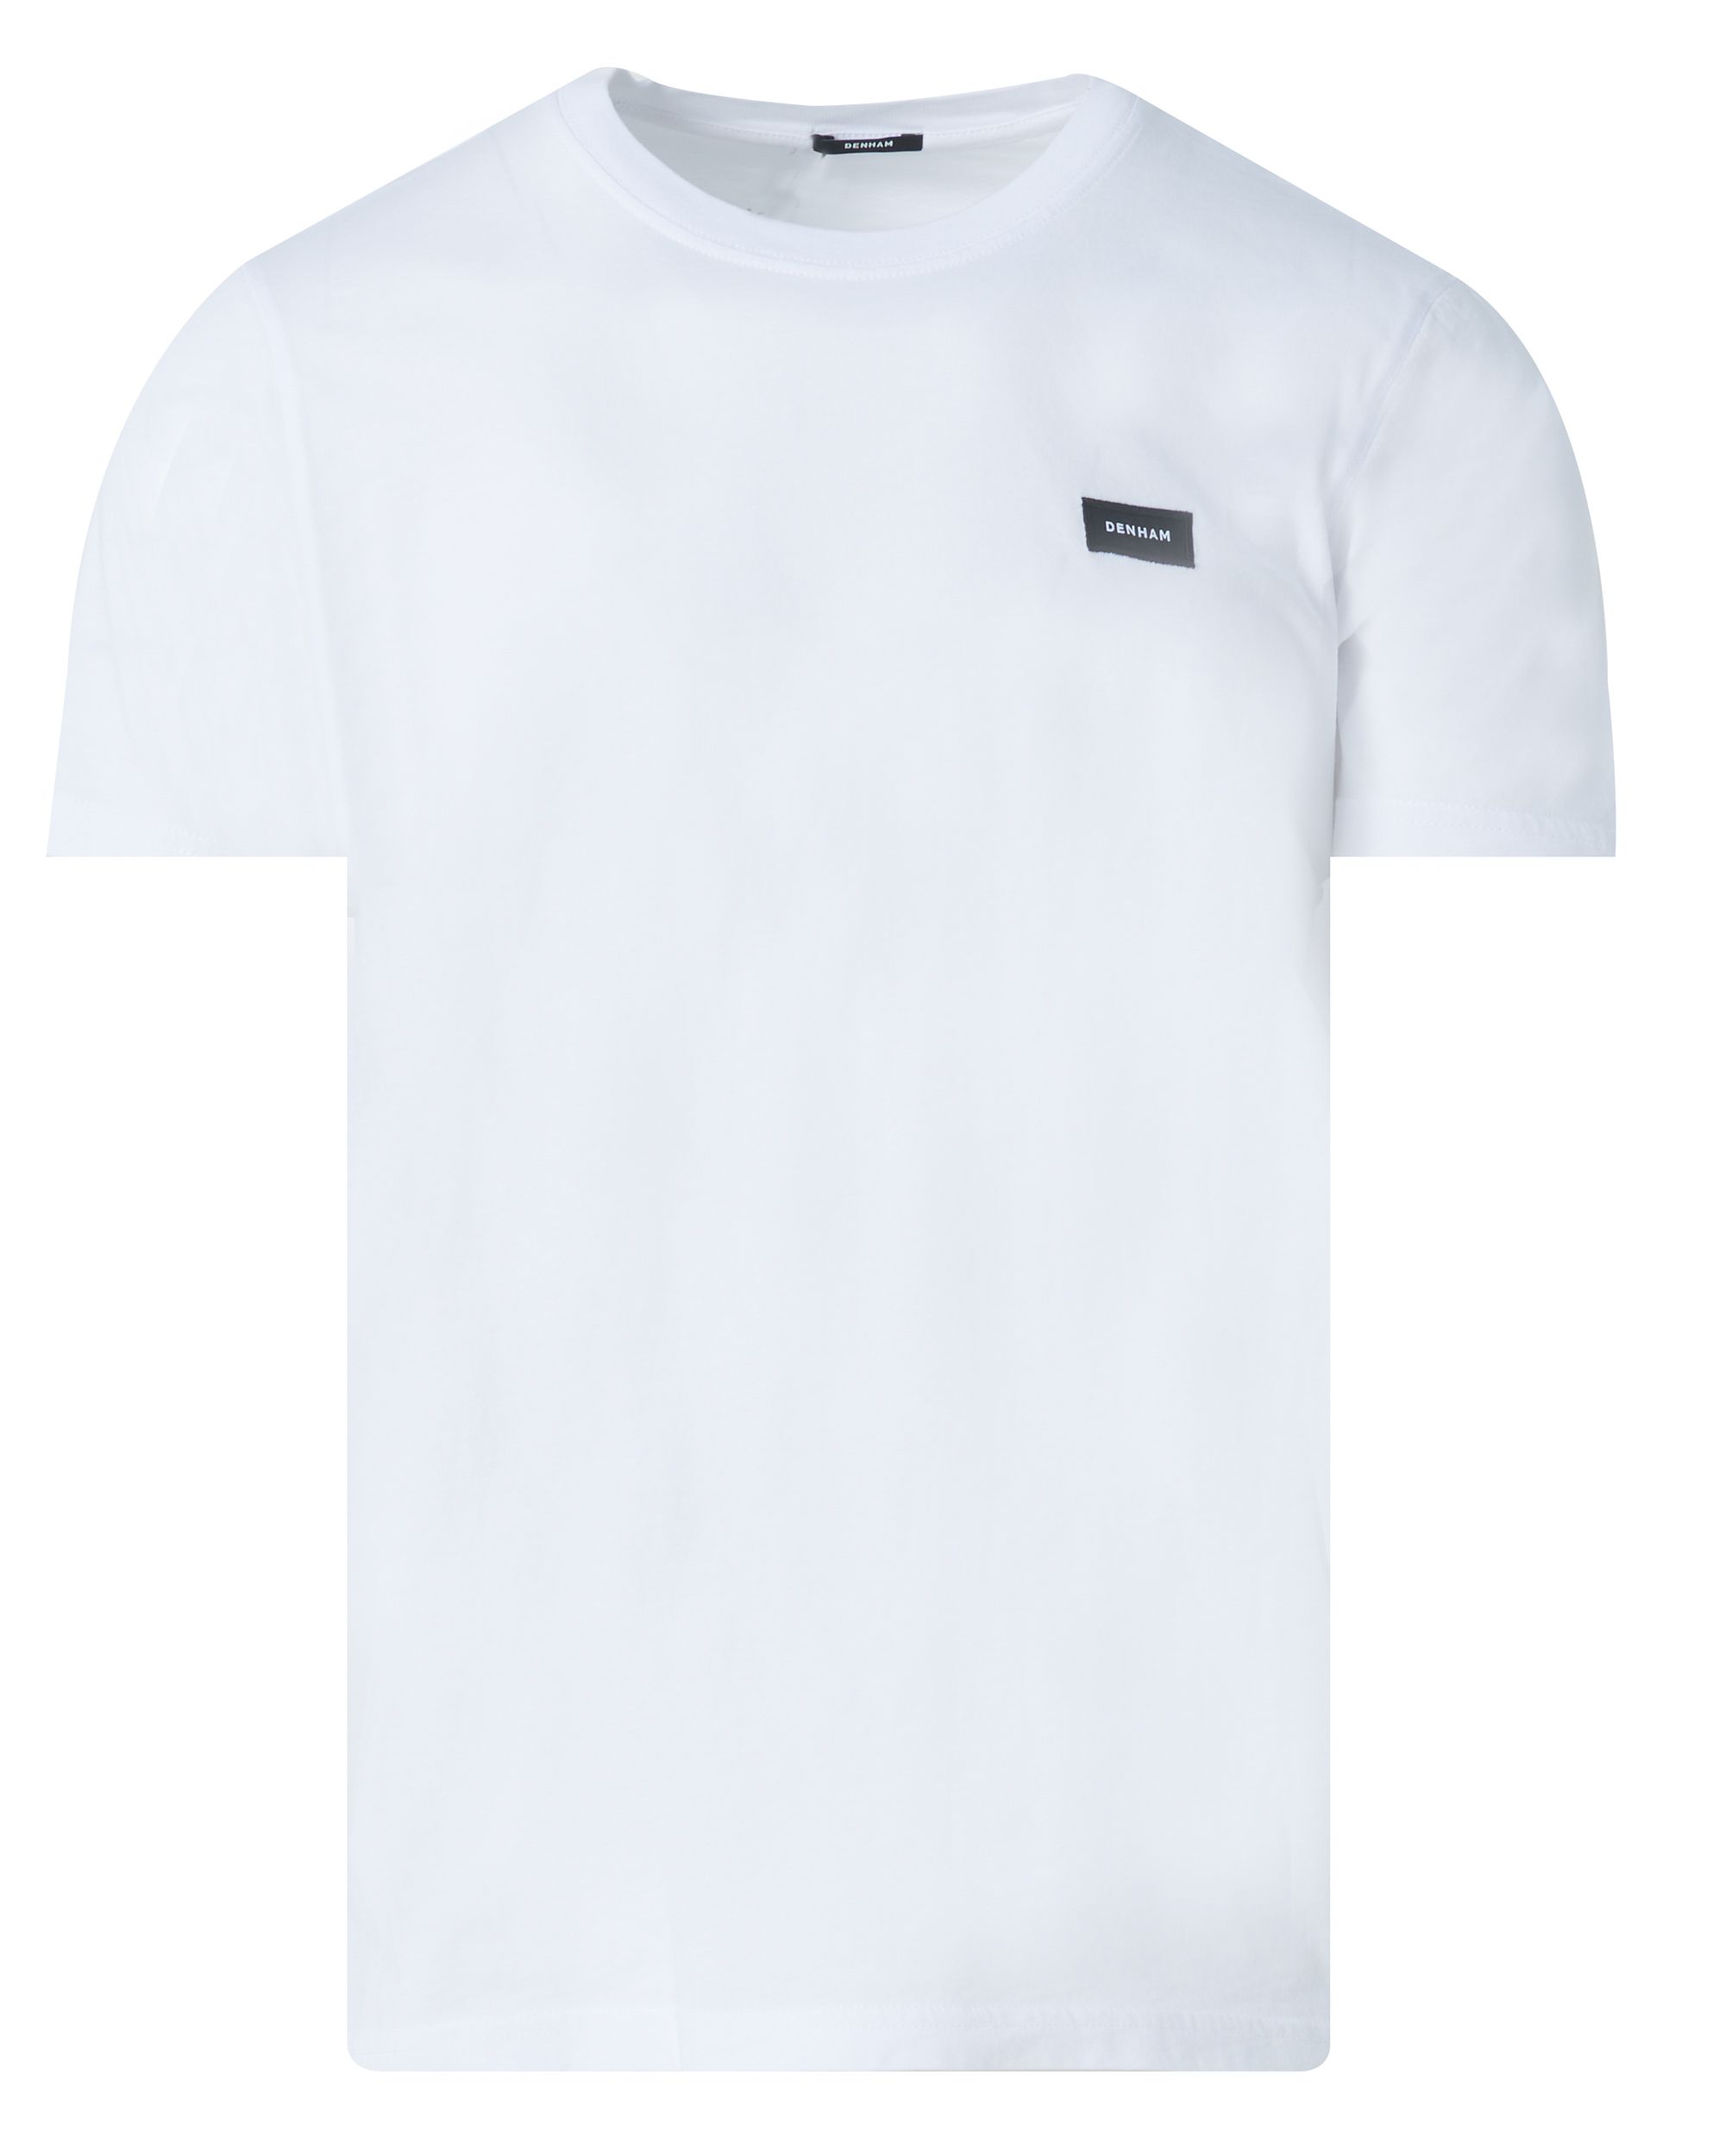 DENHAM Slim T-shirt KM Wit 085162-001-L